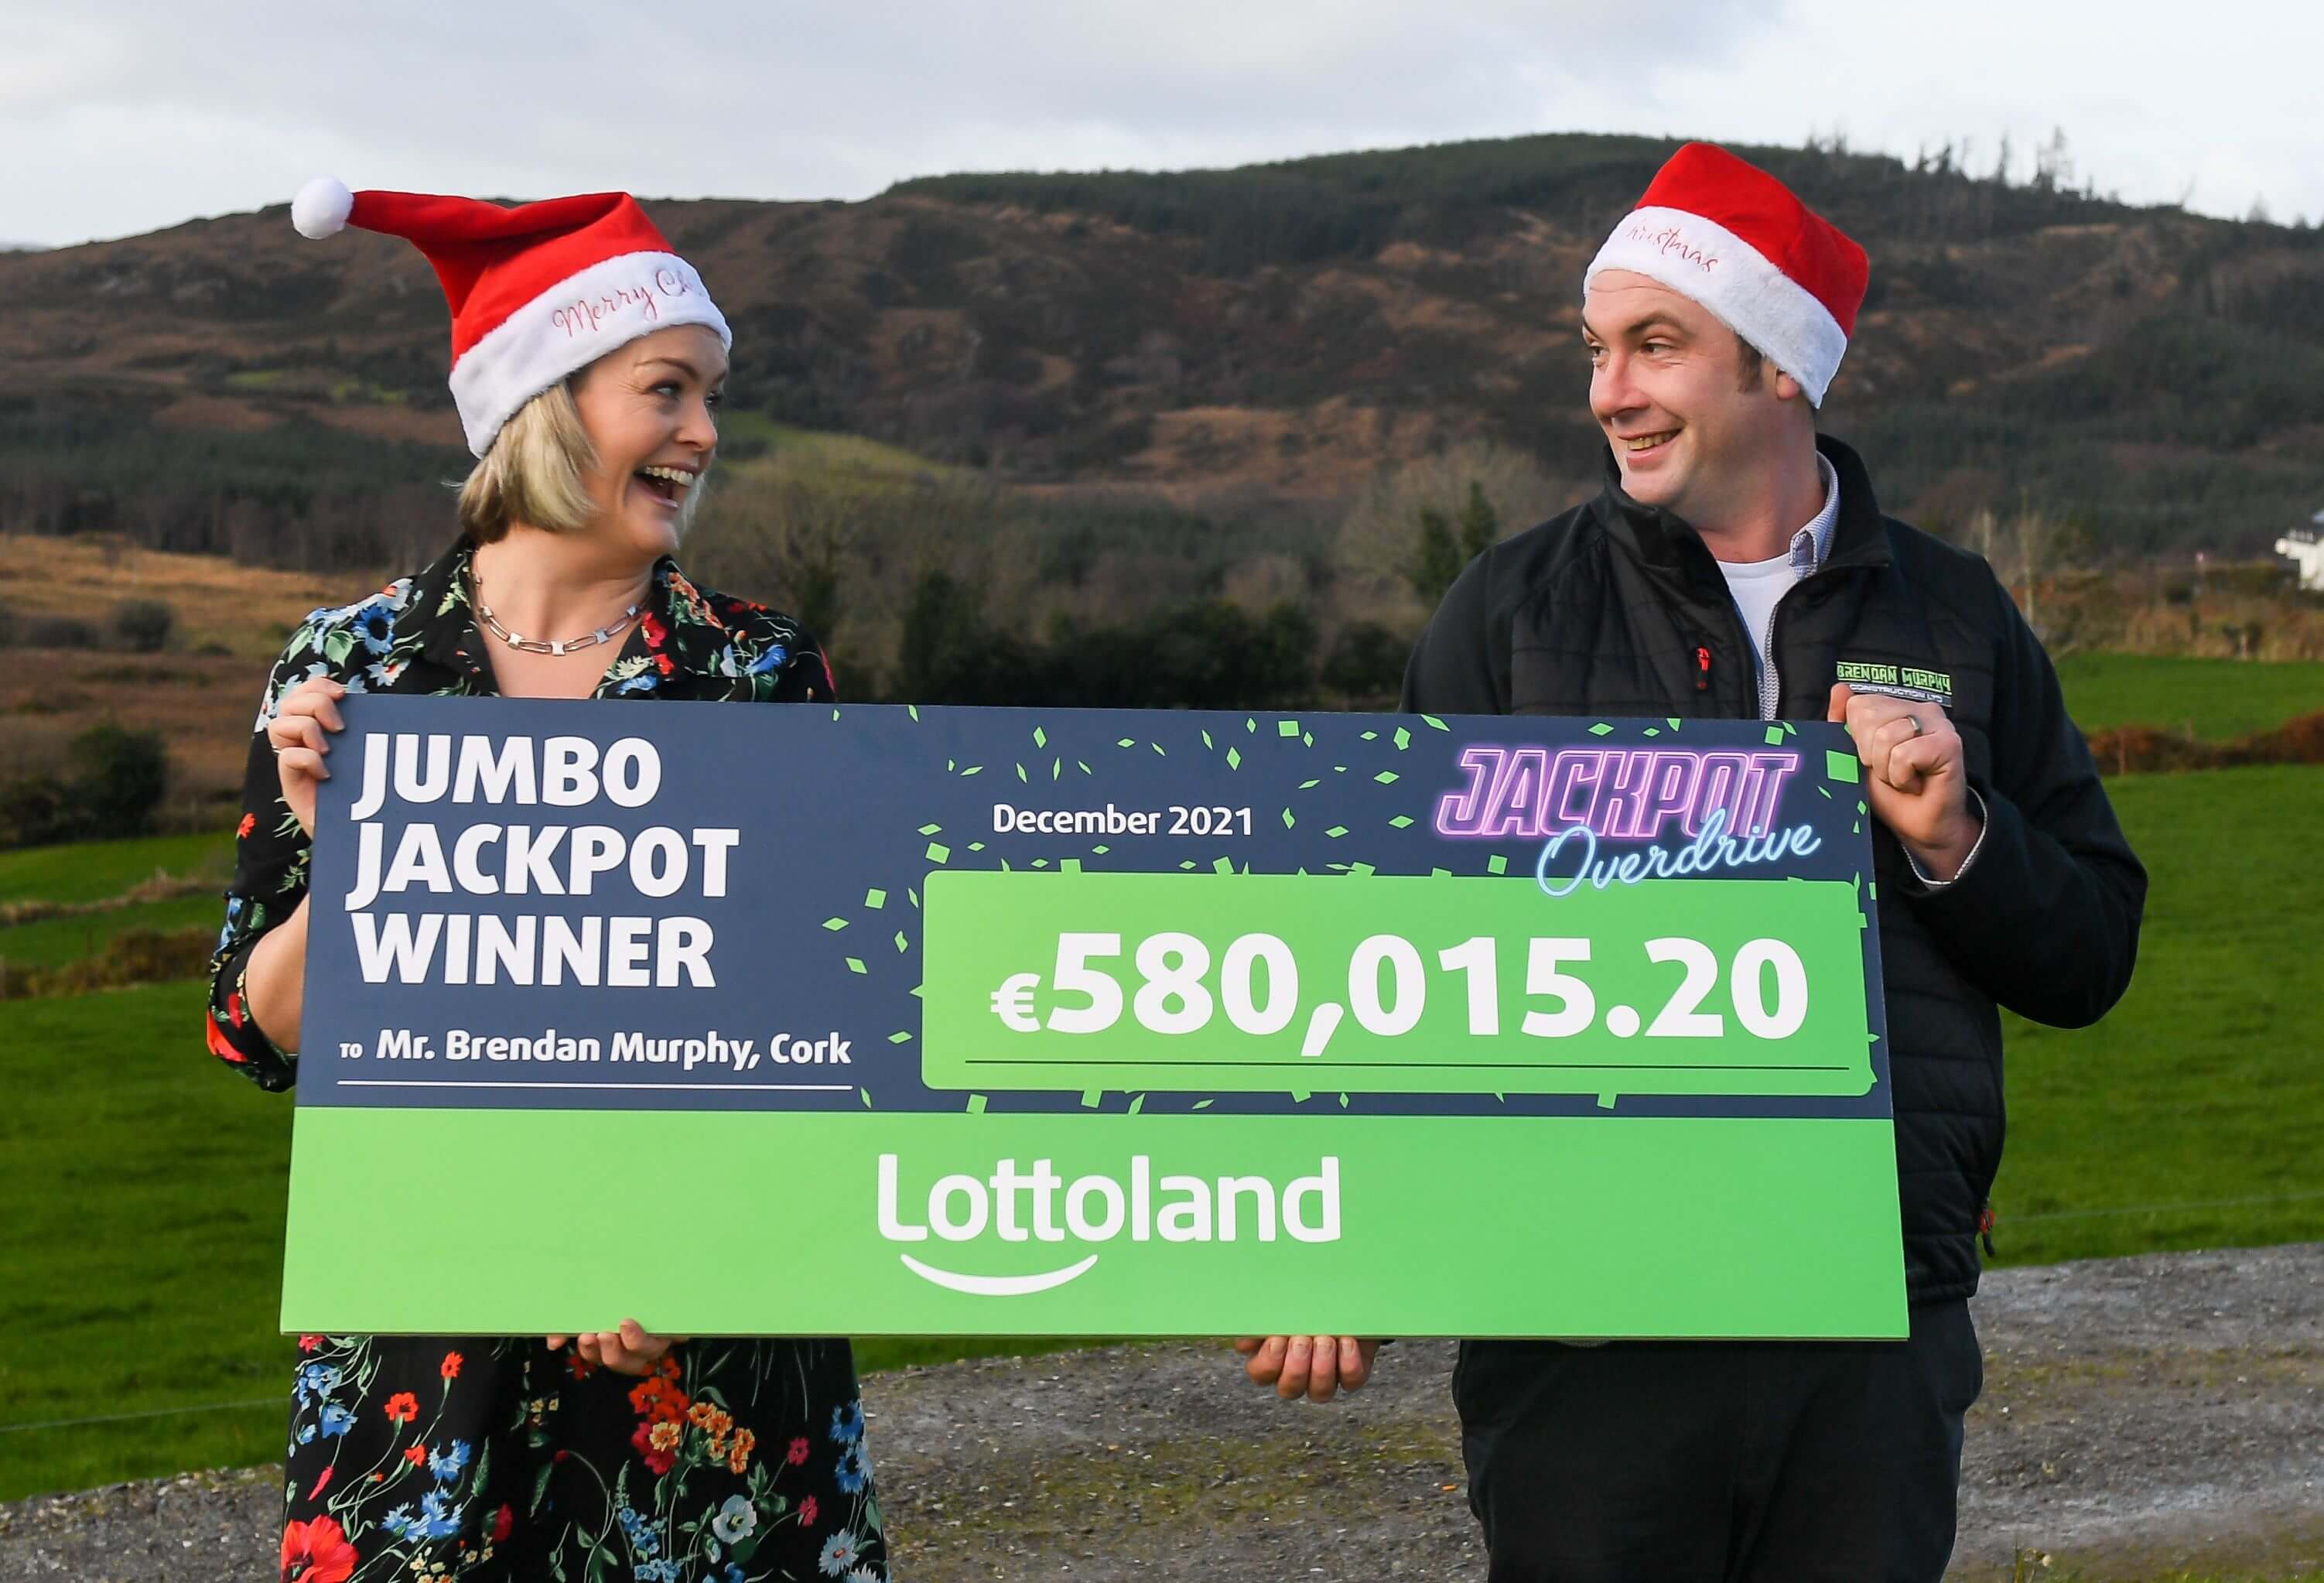 Lottoland Winner in Ireland!